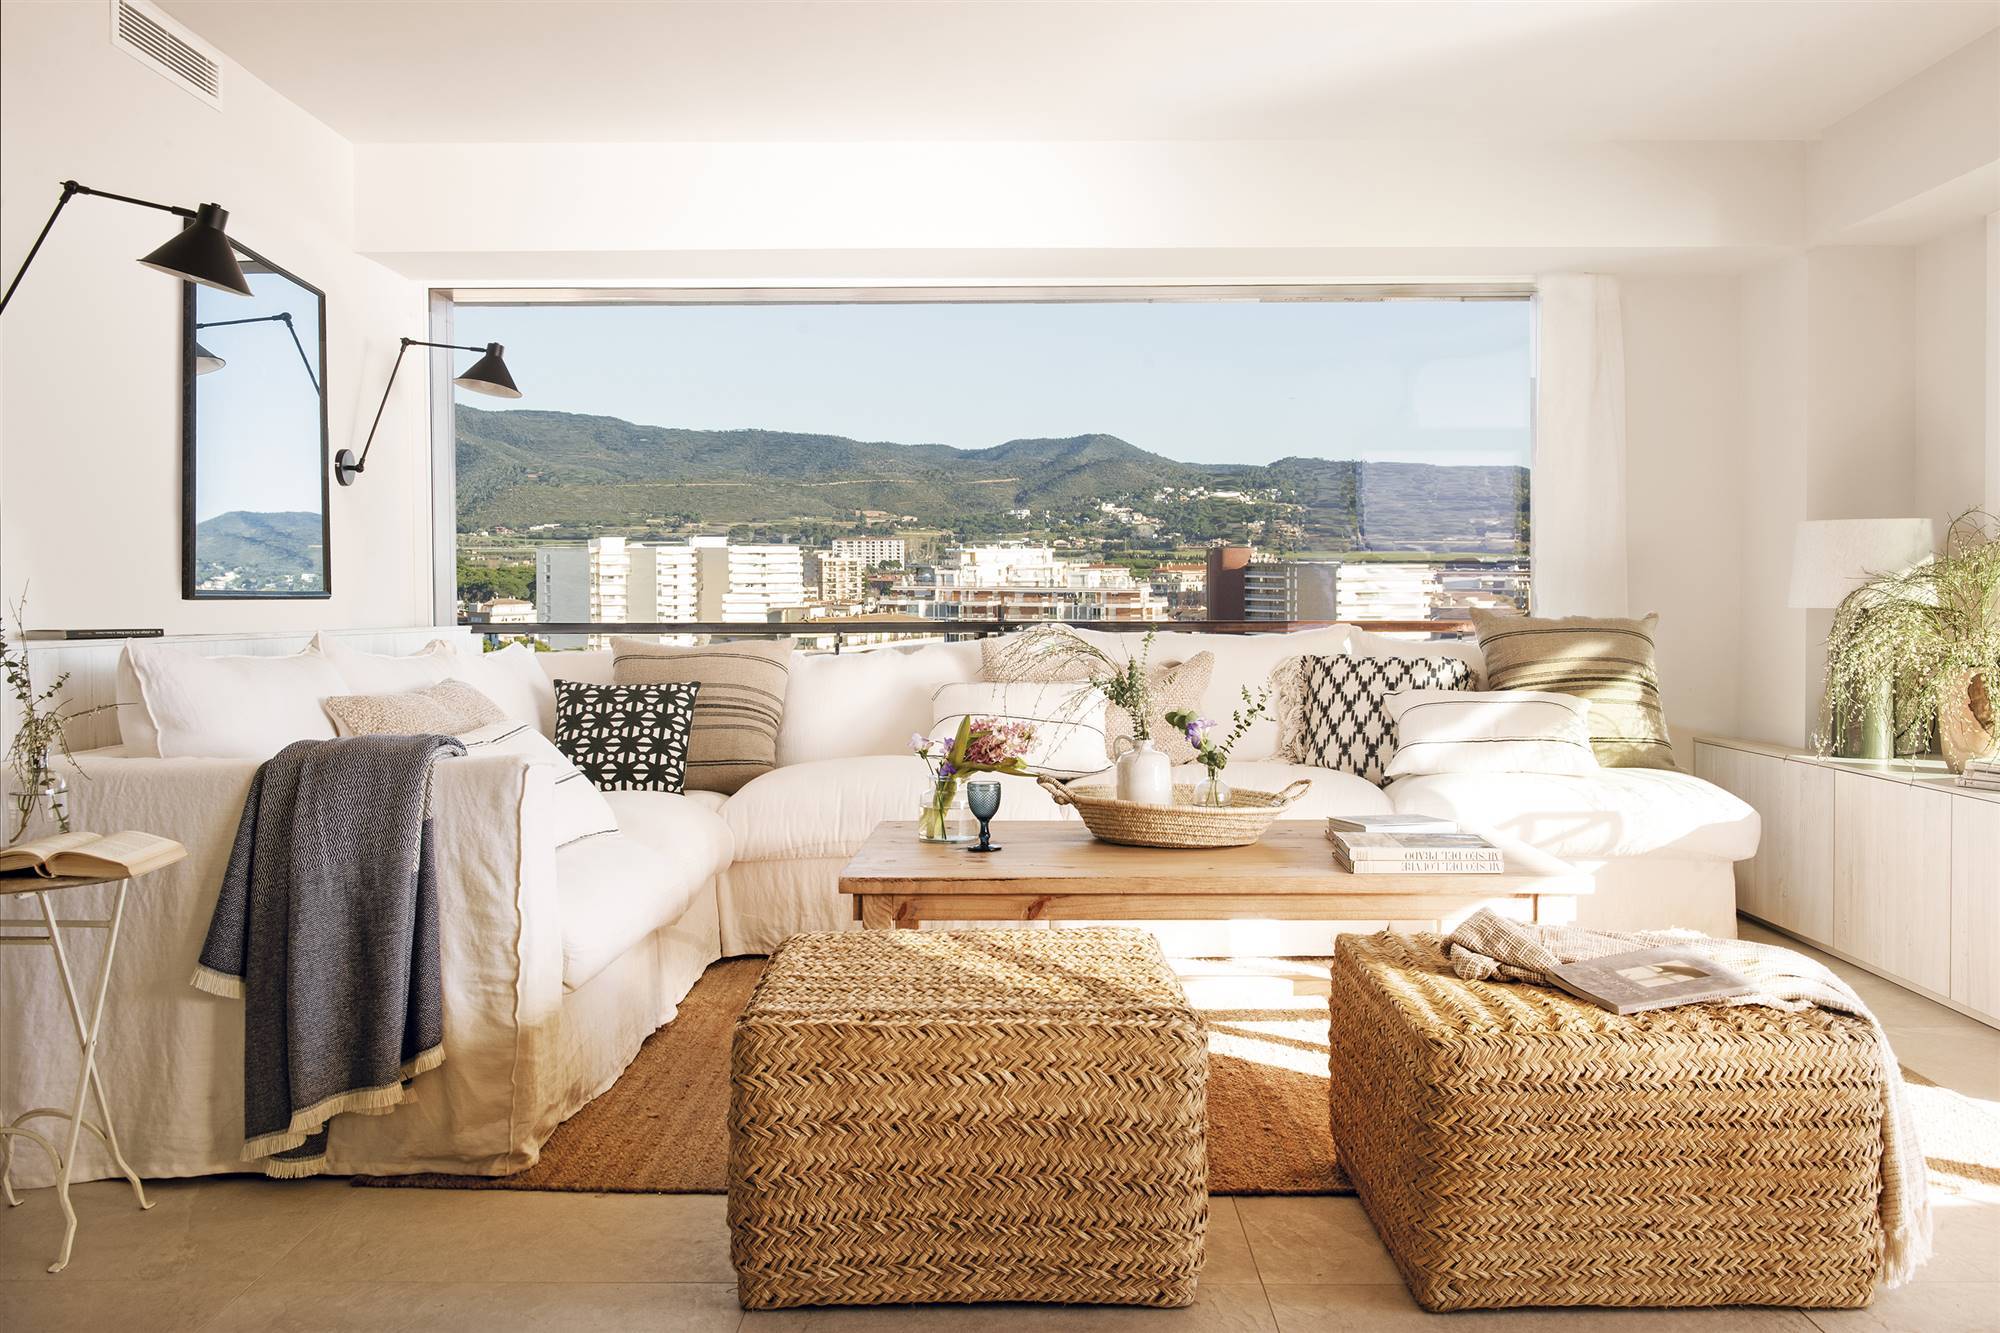 Salón con sofá esquinero de lino blanco, mesa de centro de madera, dos pufs de fibras, alfombra de fibras y terraza con vistas panorámicas al mar